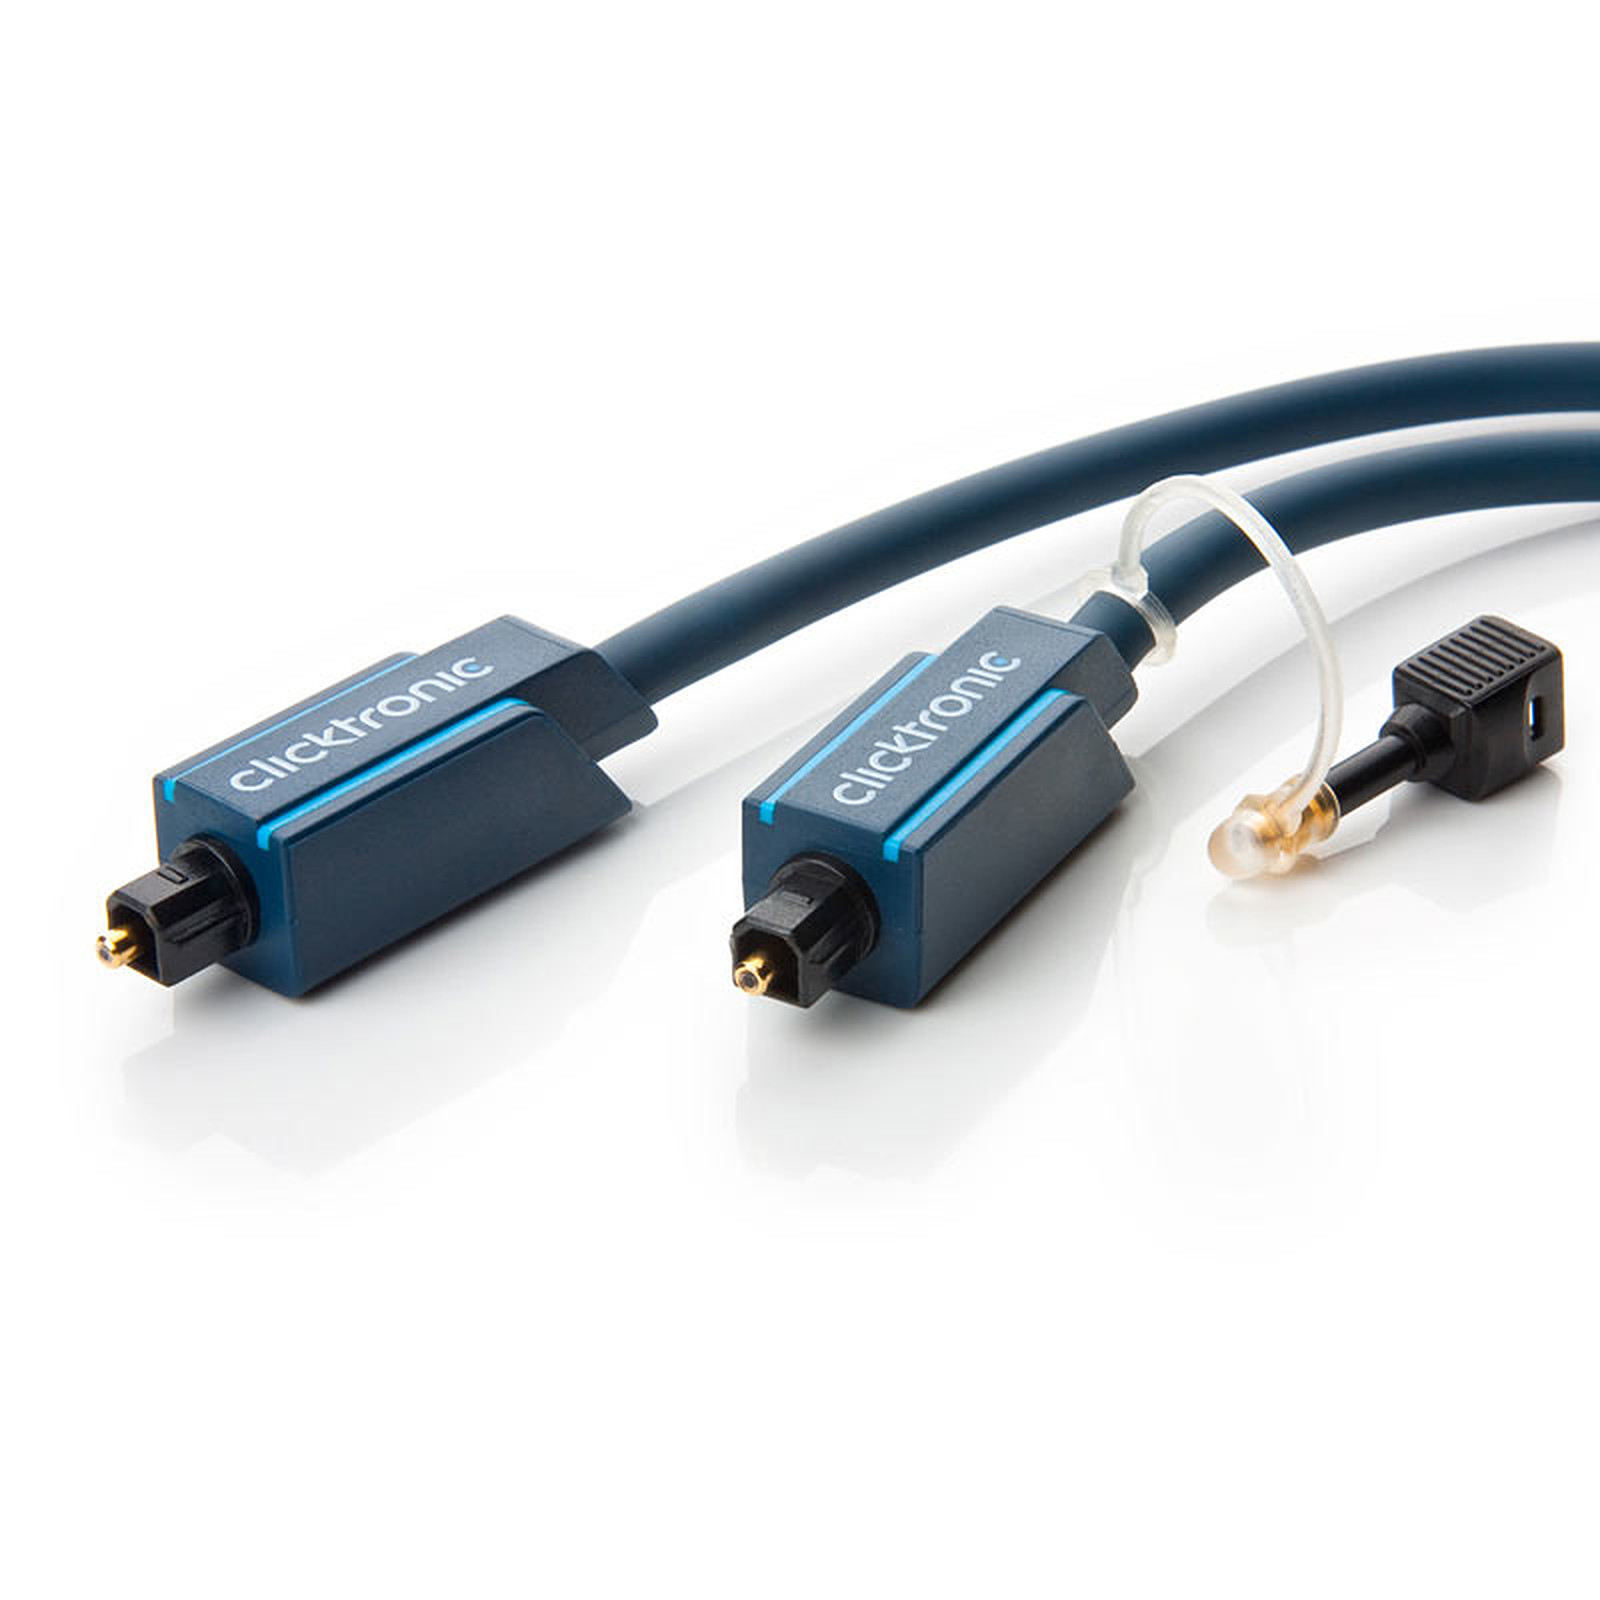 Clicktronic cable Toslink (2 mètres) - Cable audio numerique Clicktronic